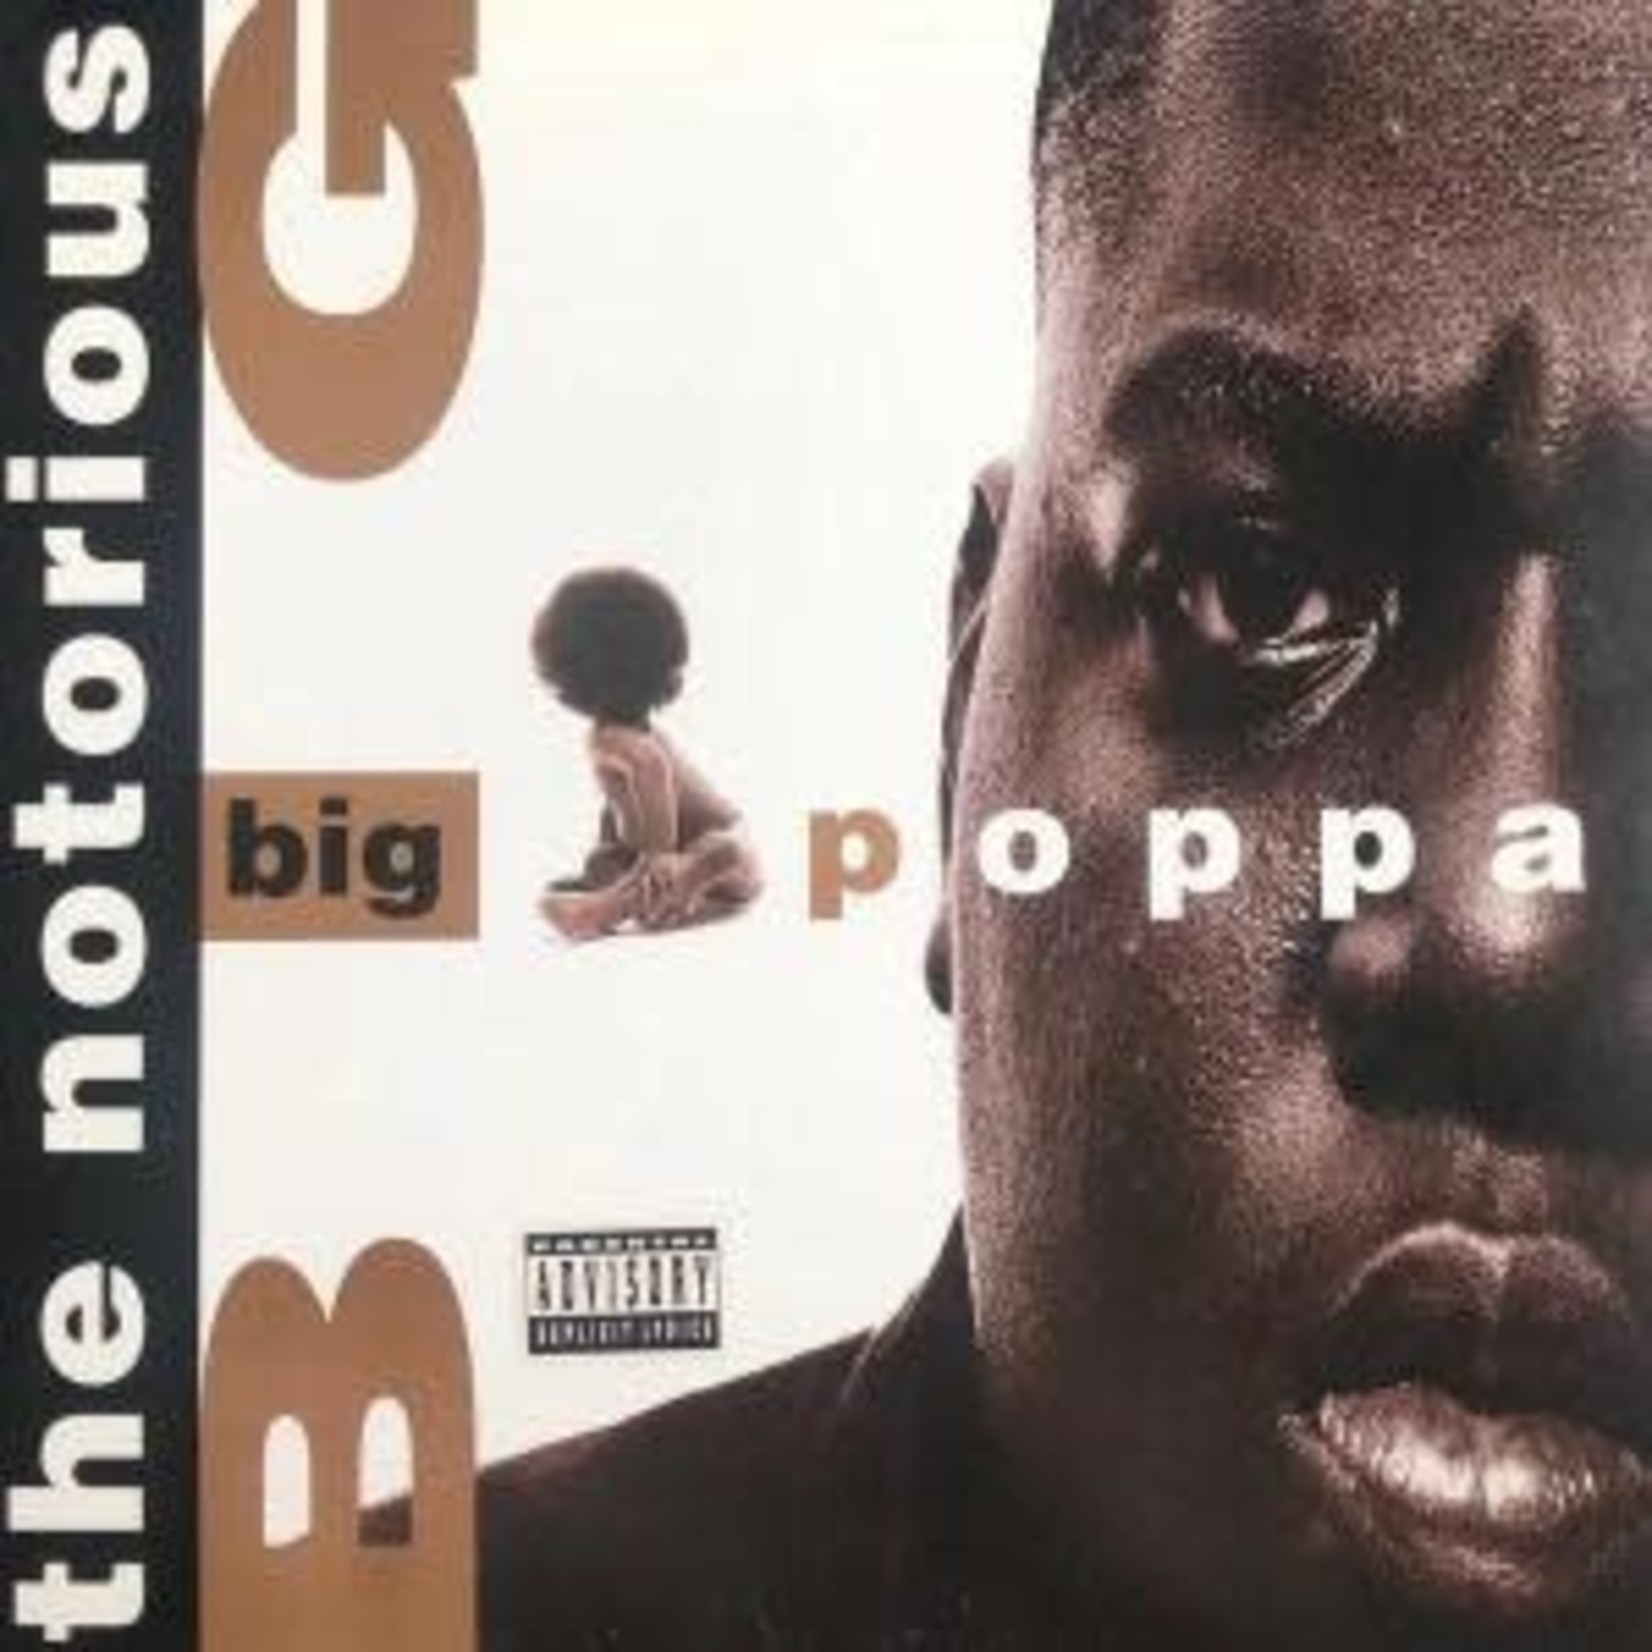 [New] Notorious B.I.G. - Big Poppa EP (white vinyl)